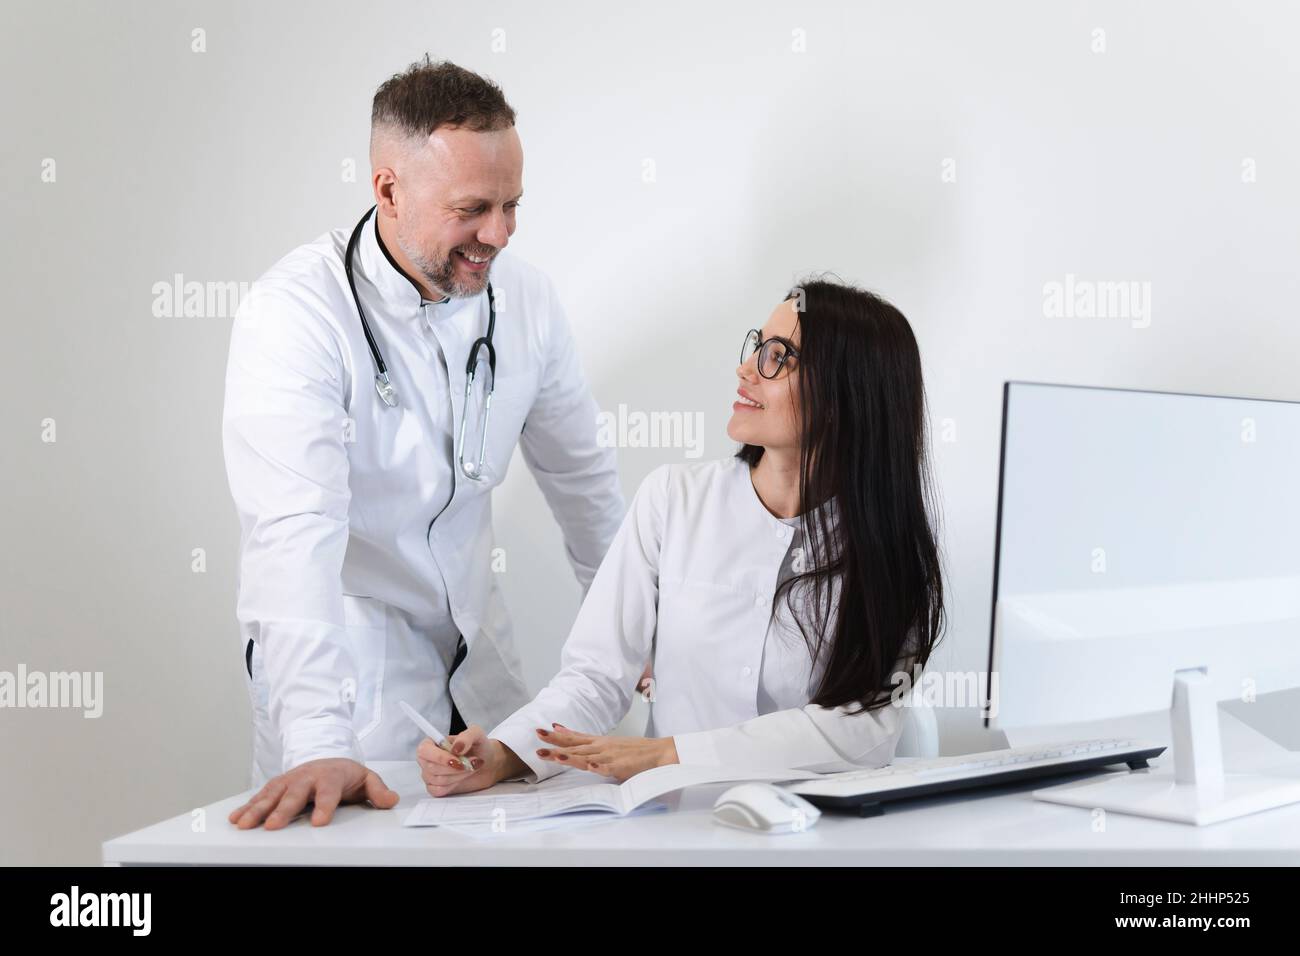 Una trabajadora médica joven consulta con el médico jefe masculino. Dos colegas médicos se divierten hablando en la oficina Foto de stock